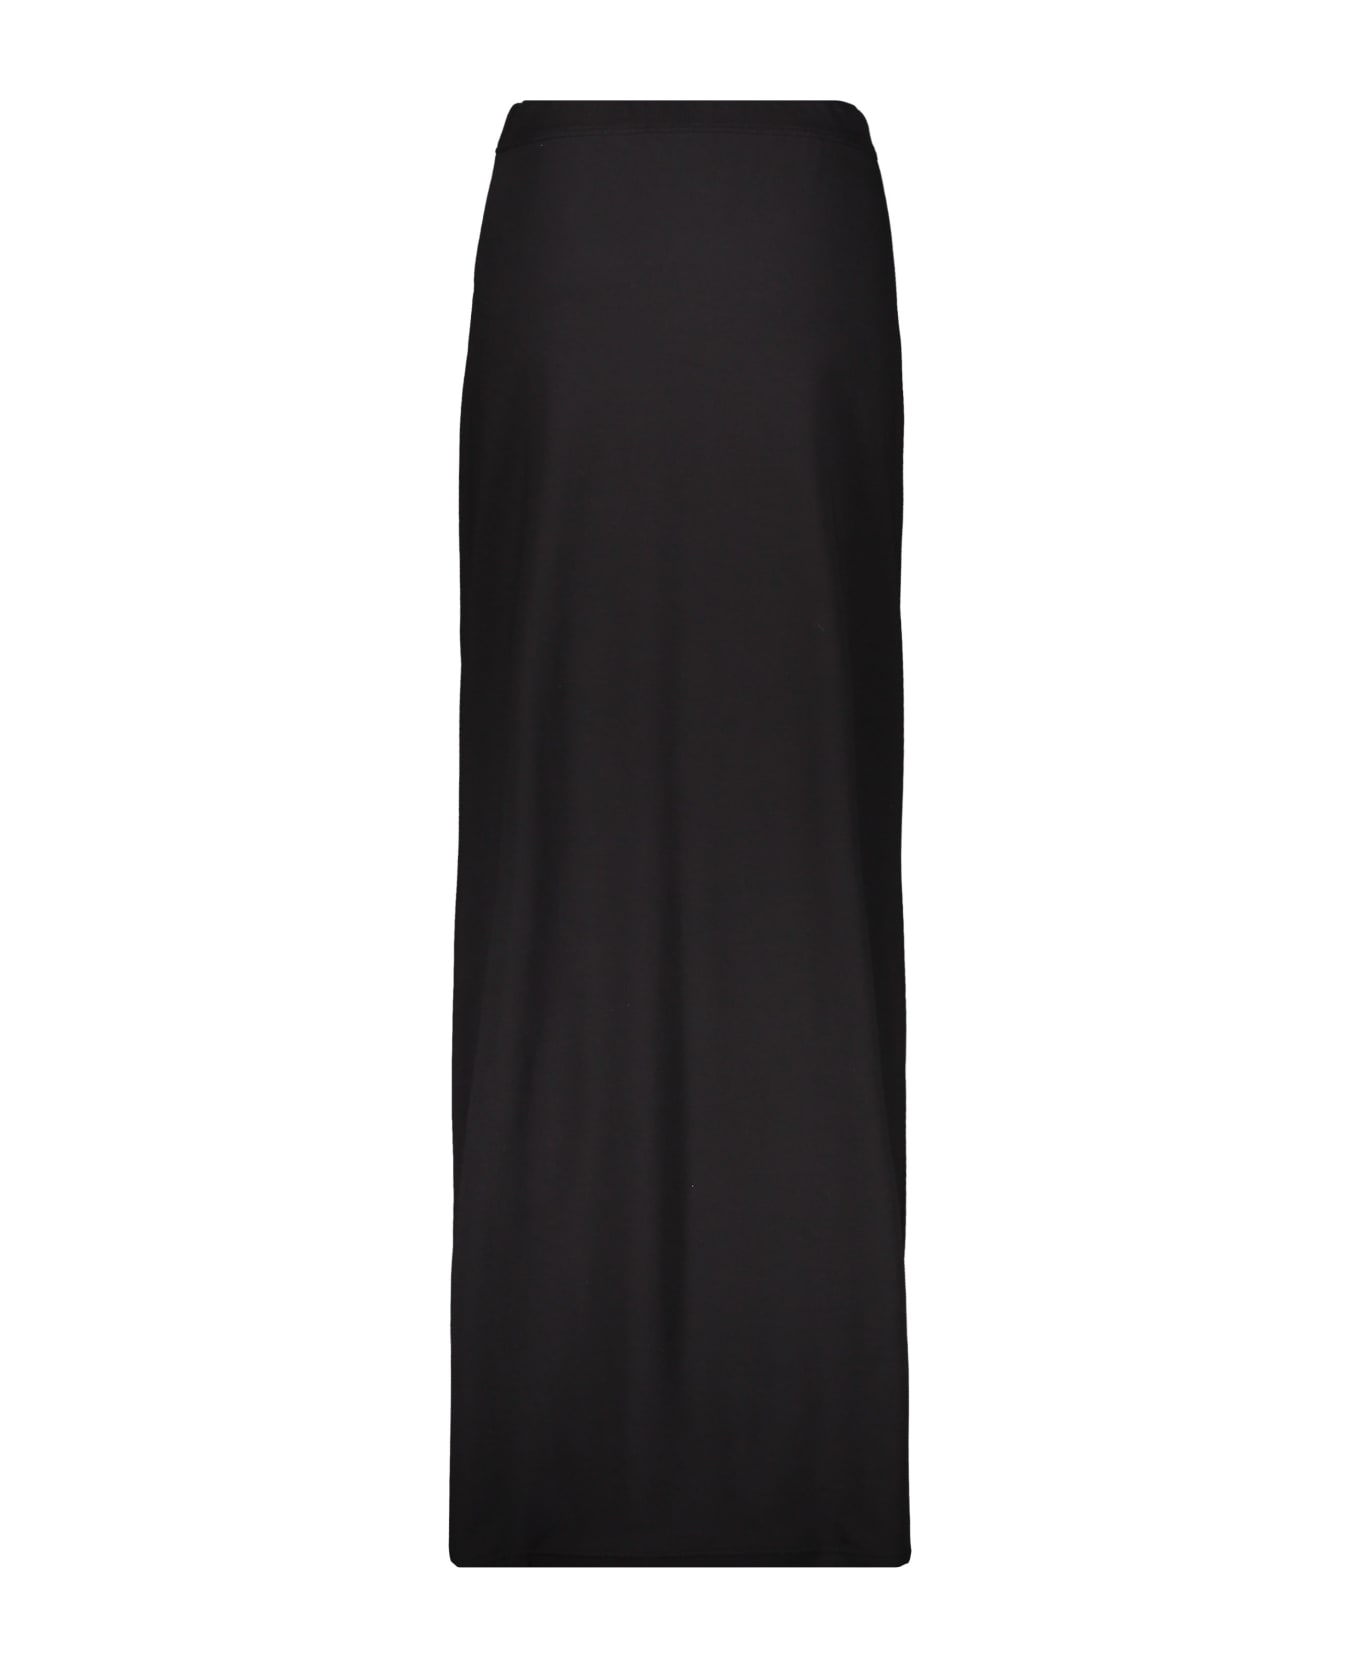 Burberry Long Skirt - black